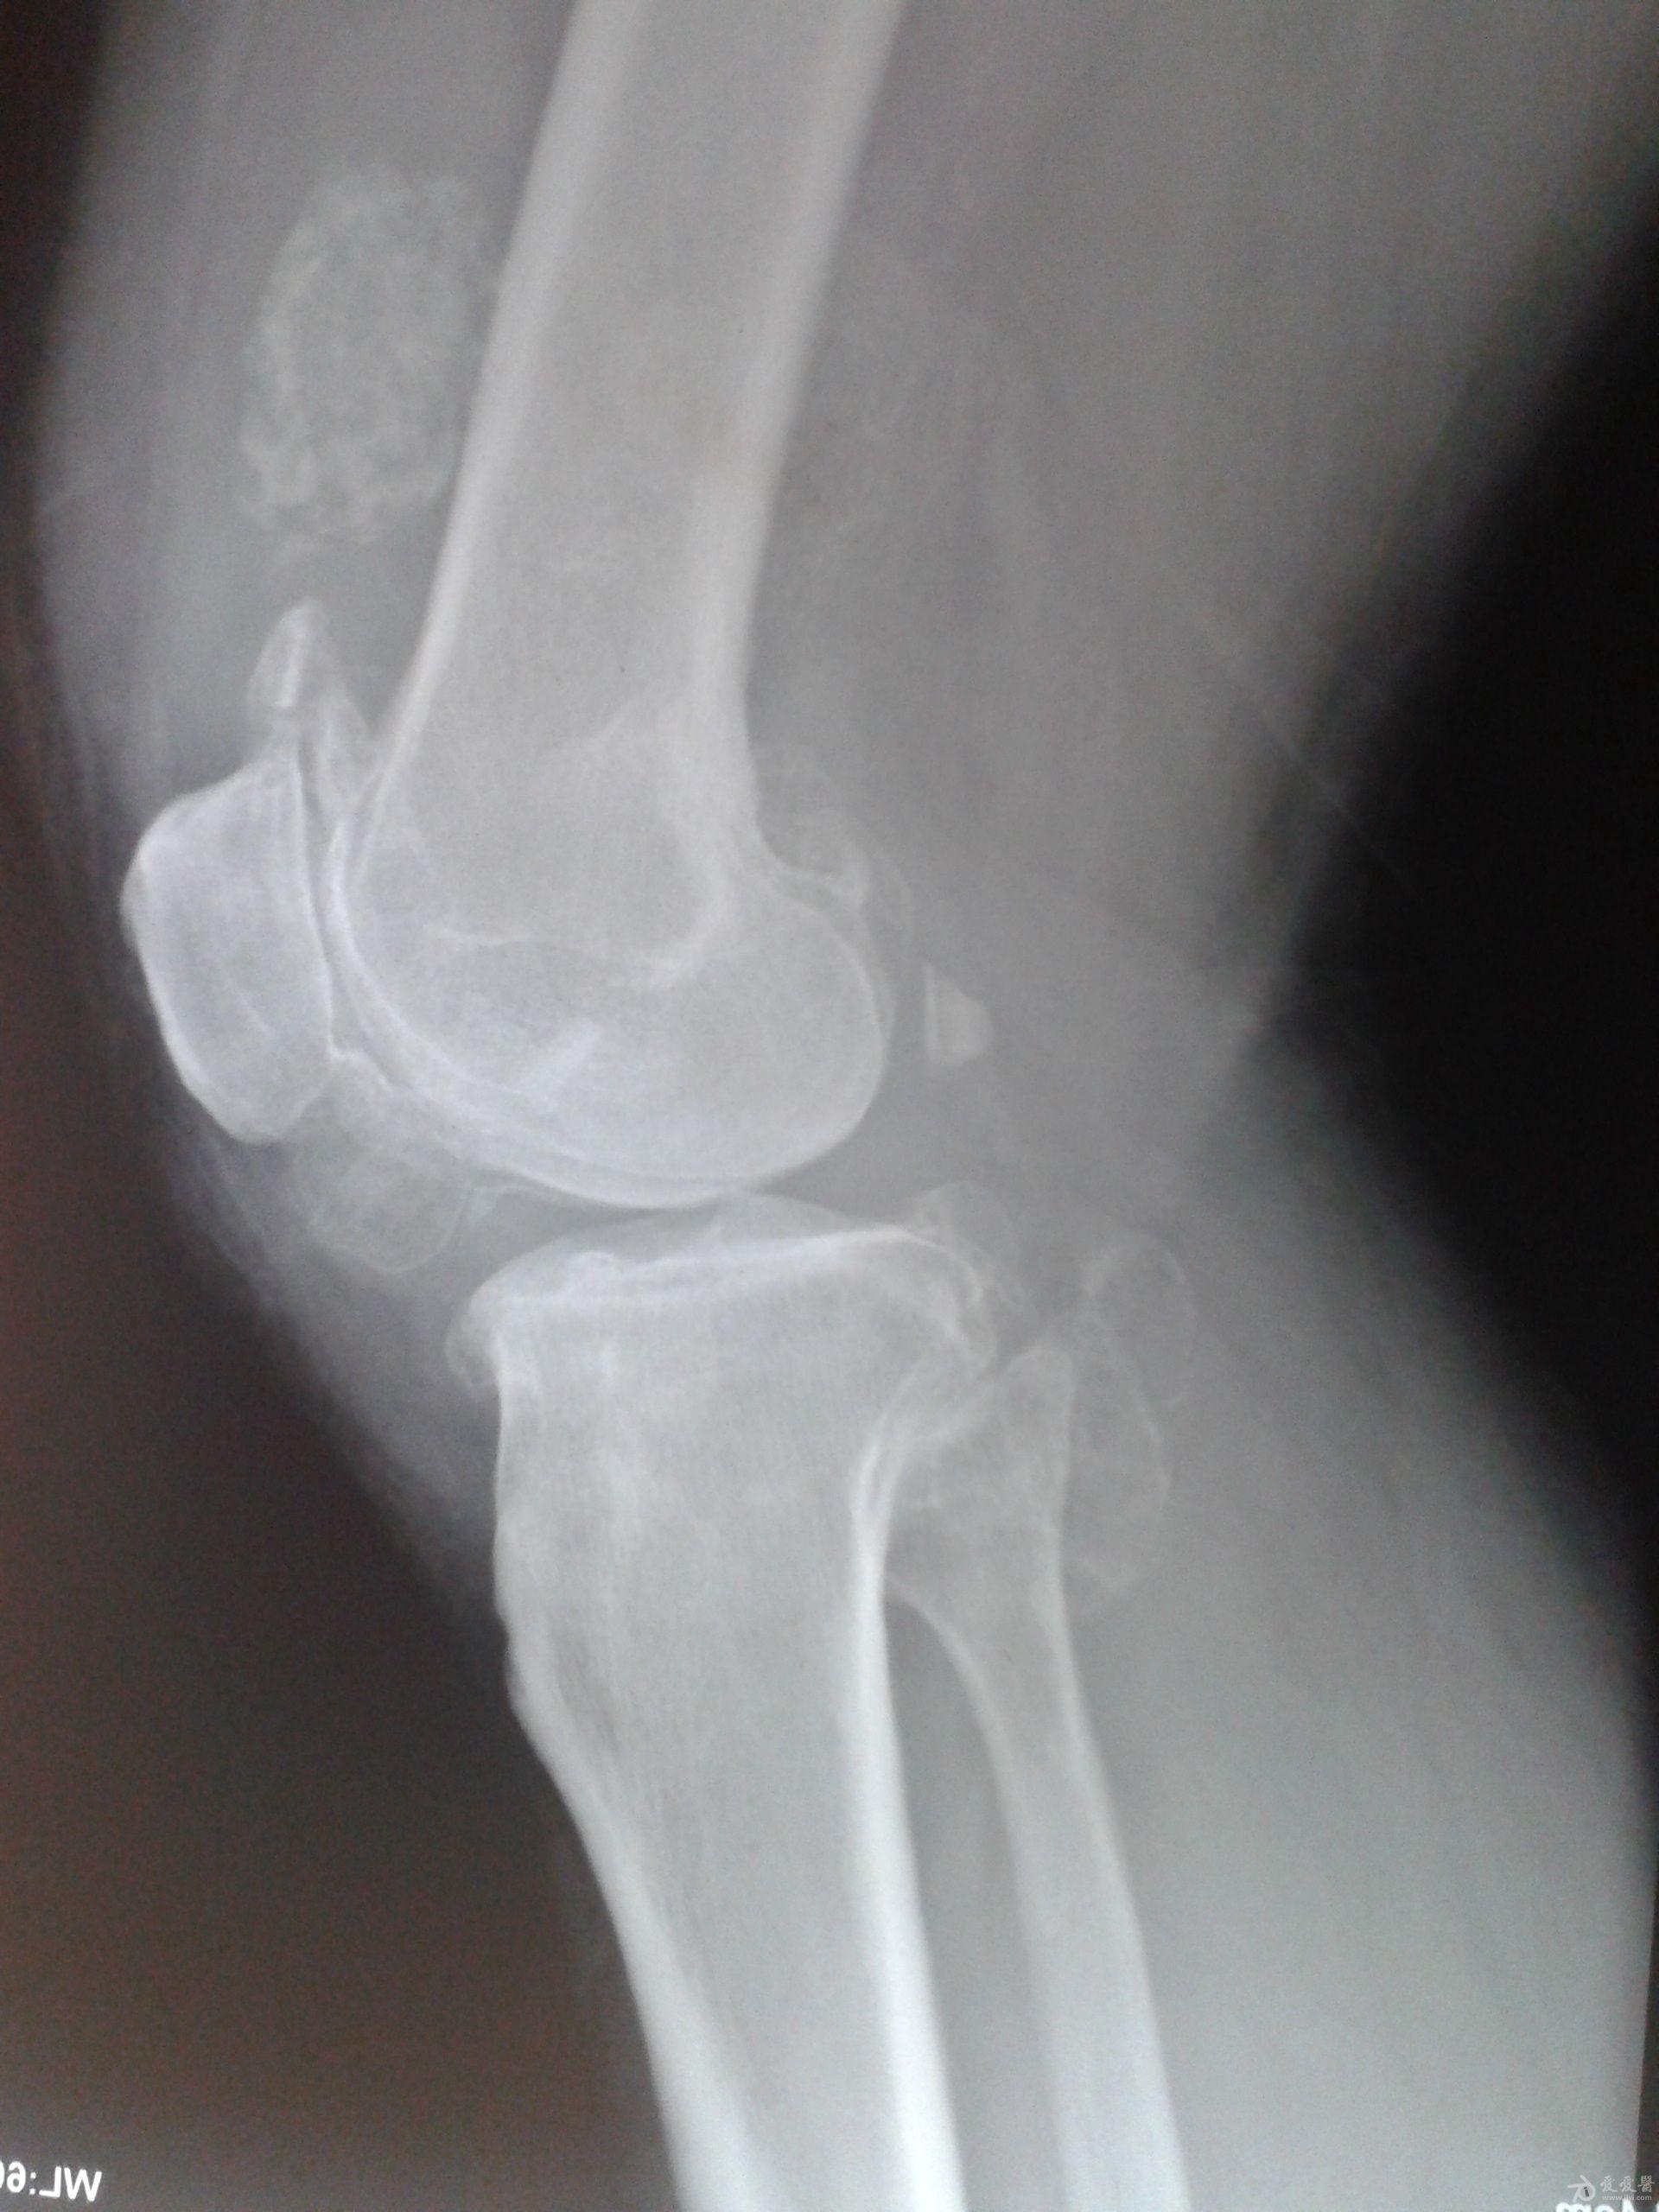 上传2位患者膝关节的dr片